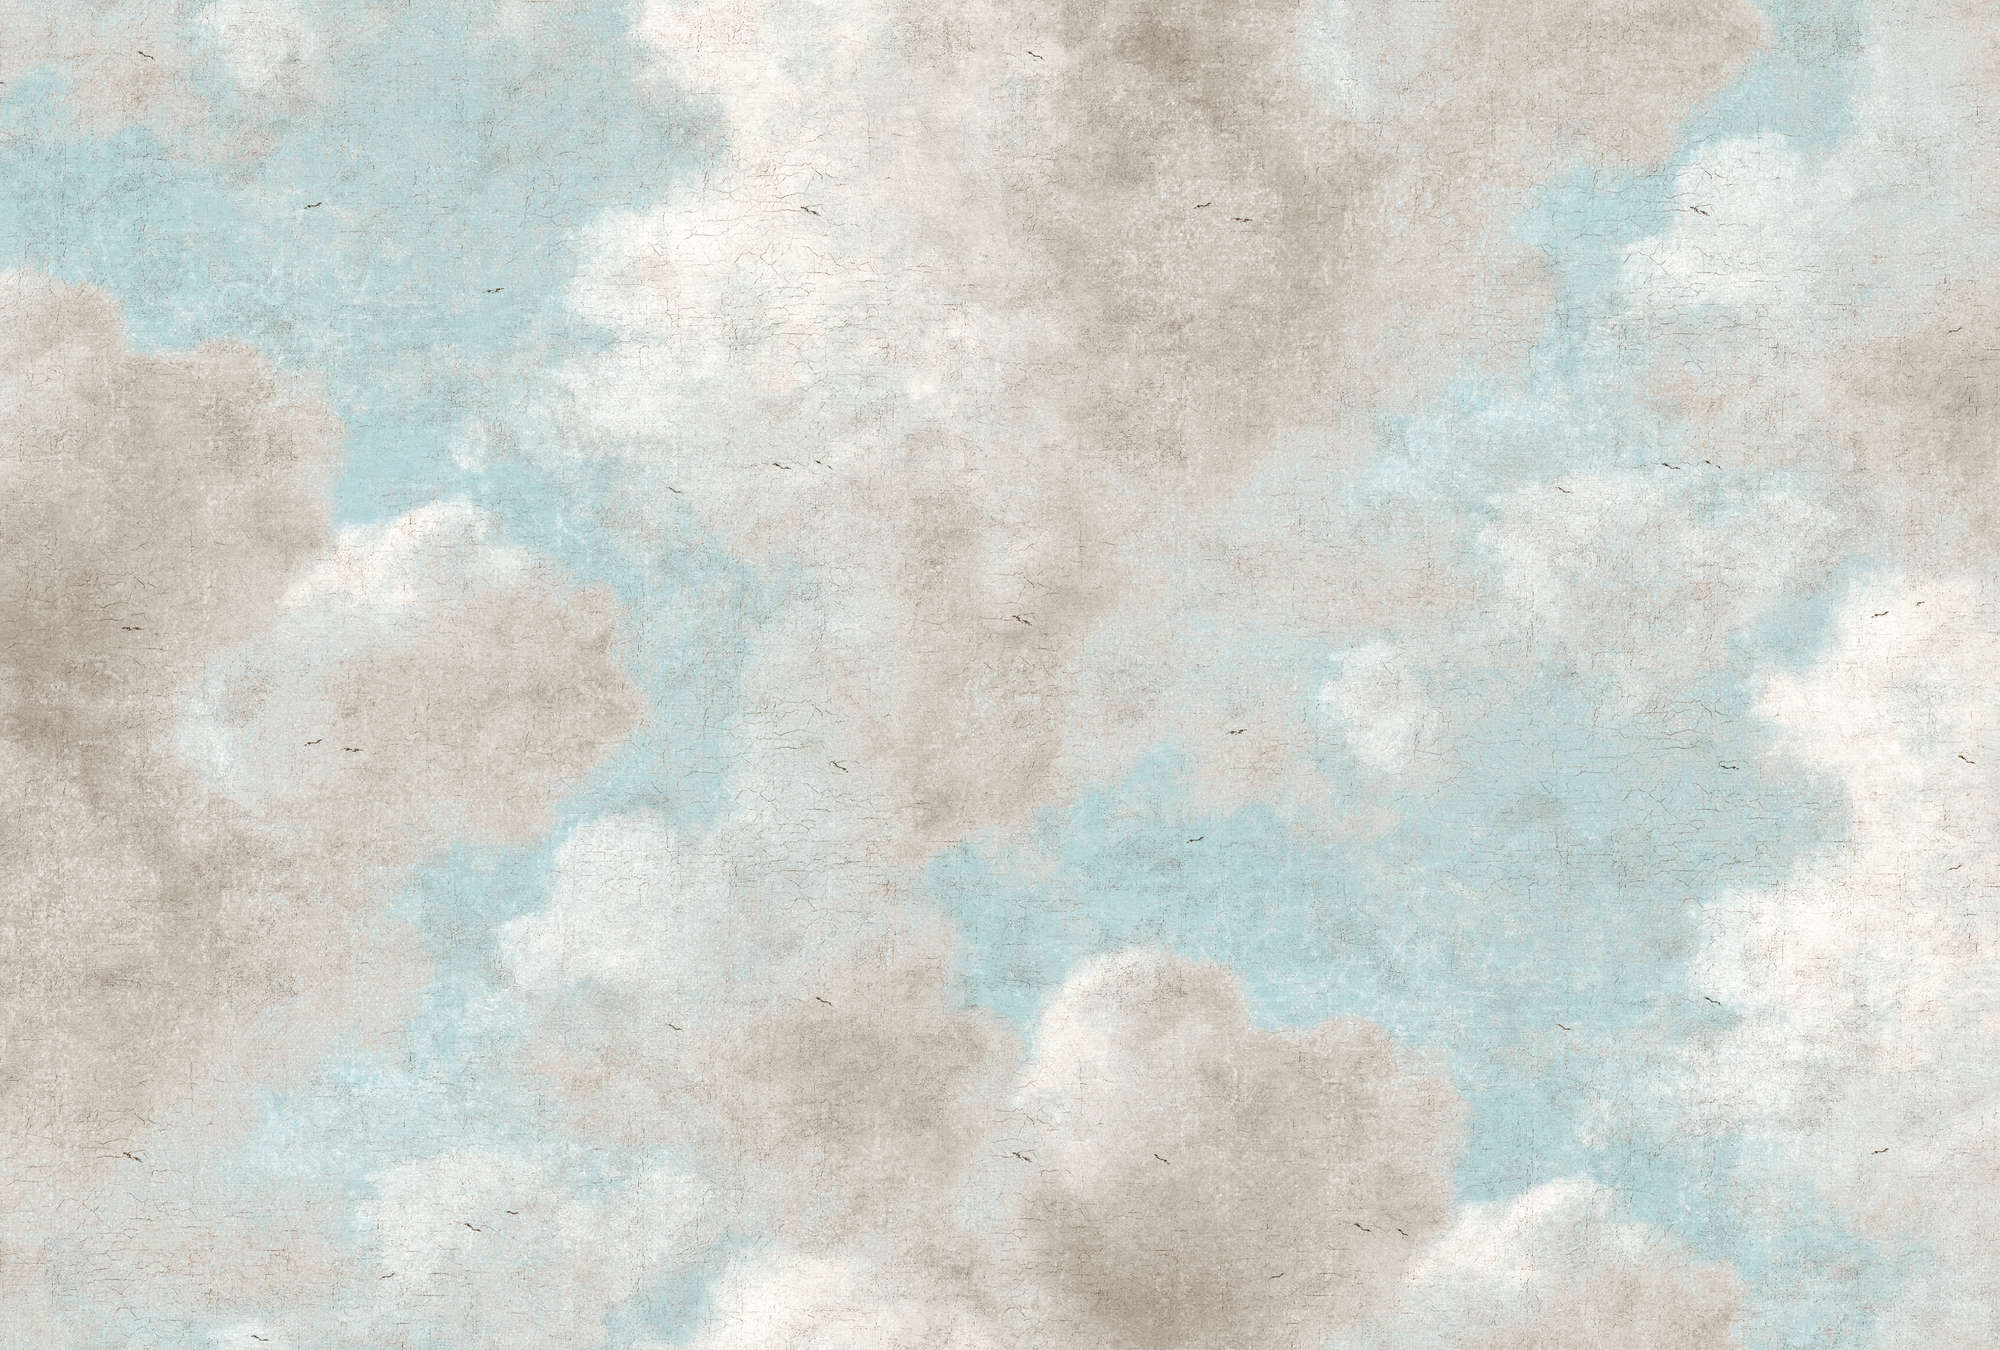             Fototapete Wolken, blauer Himmel im Ölgemälde Stil – Grau, Blau
        